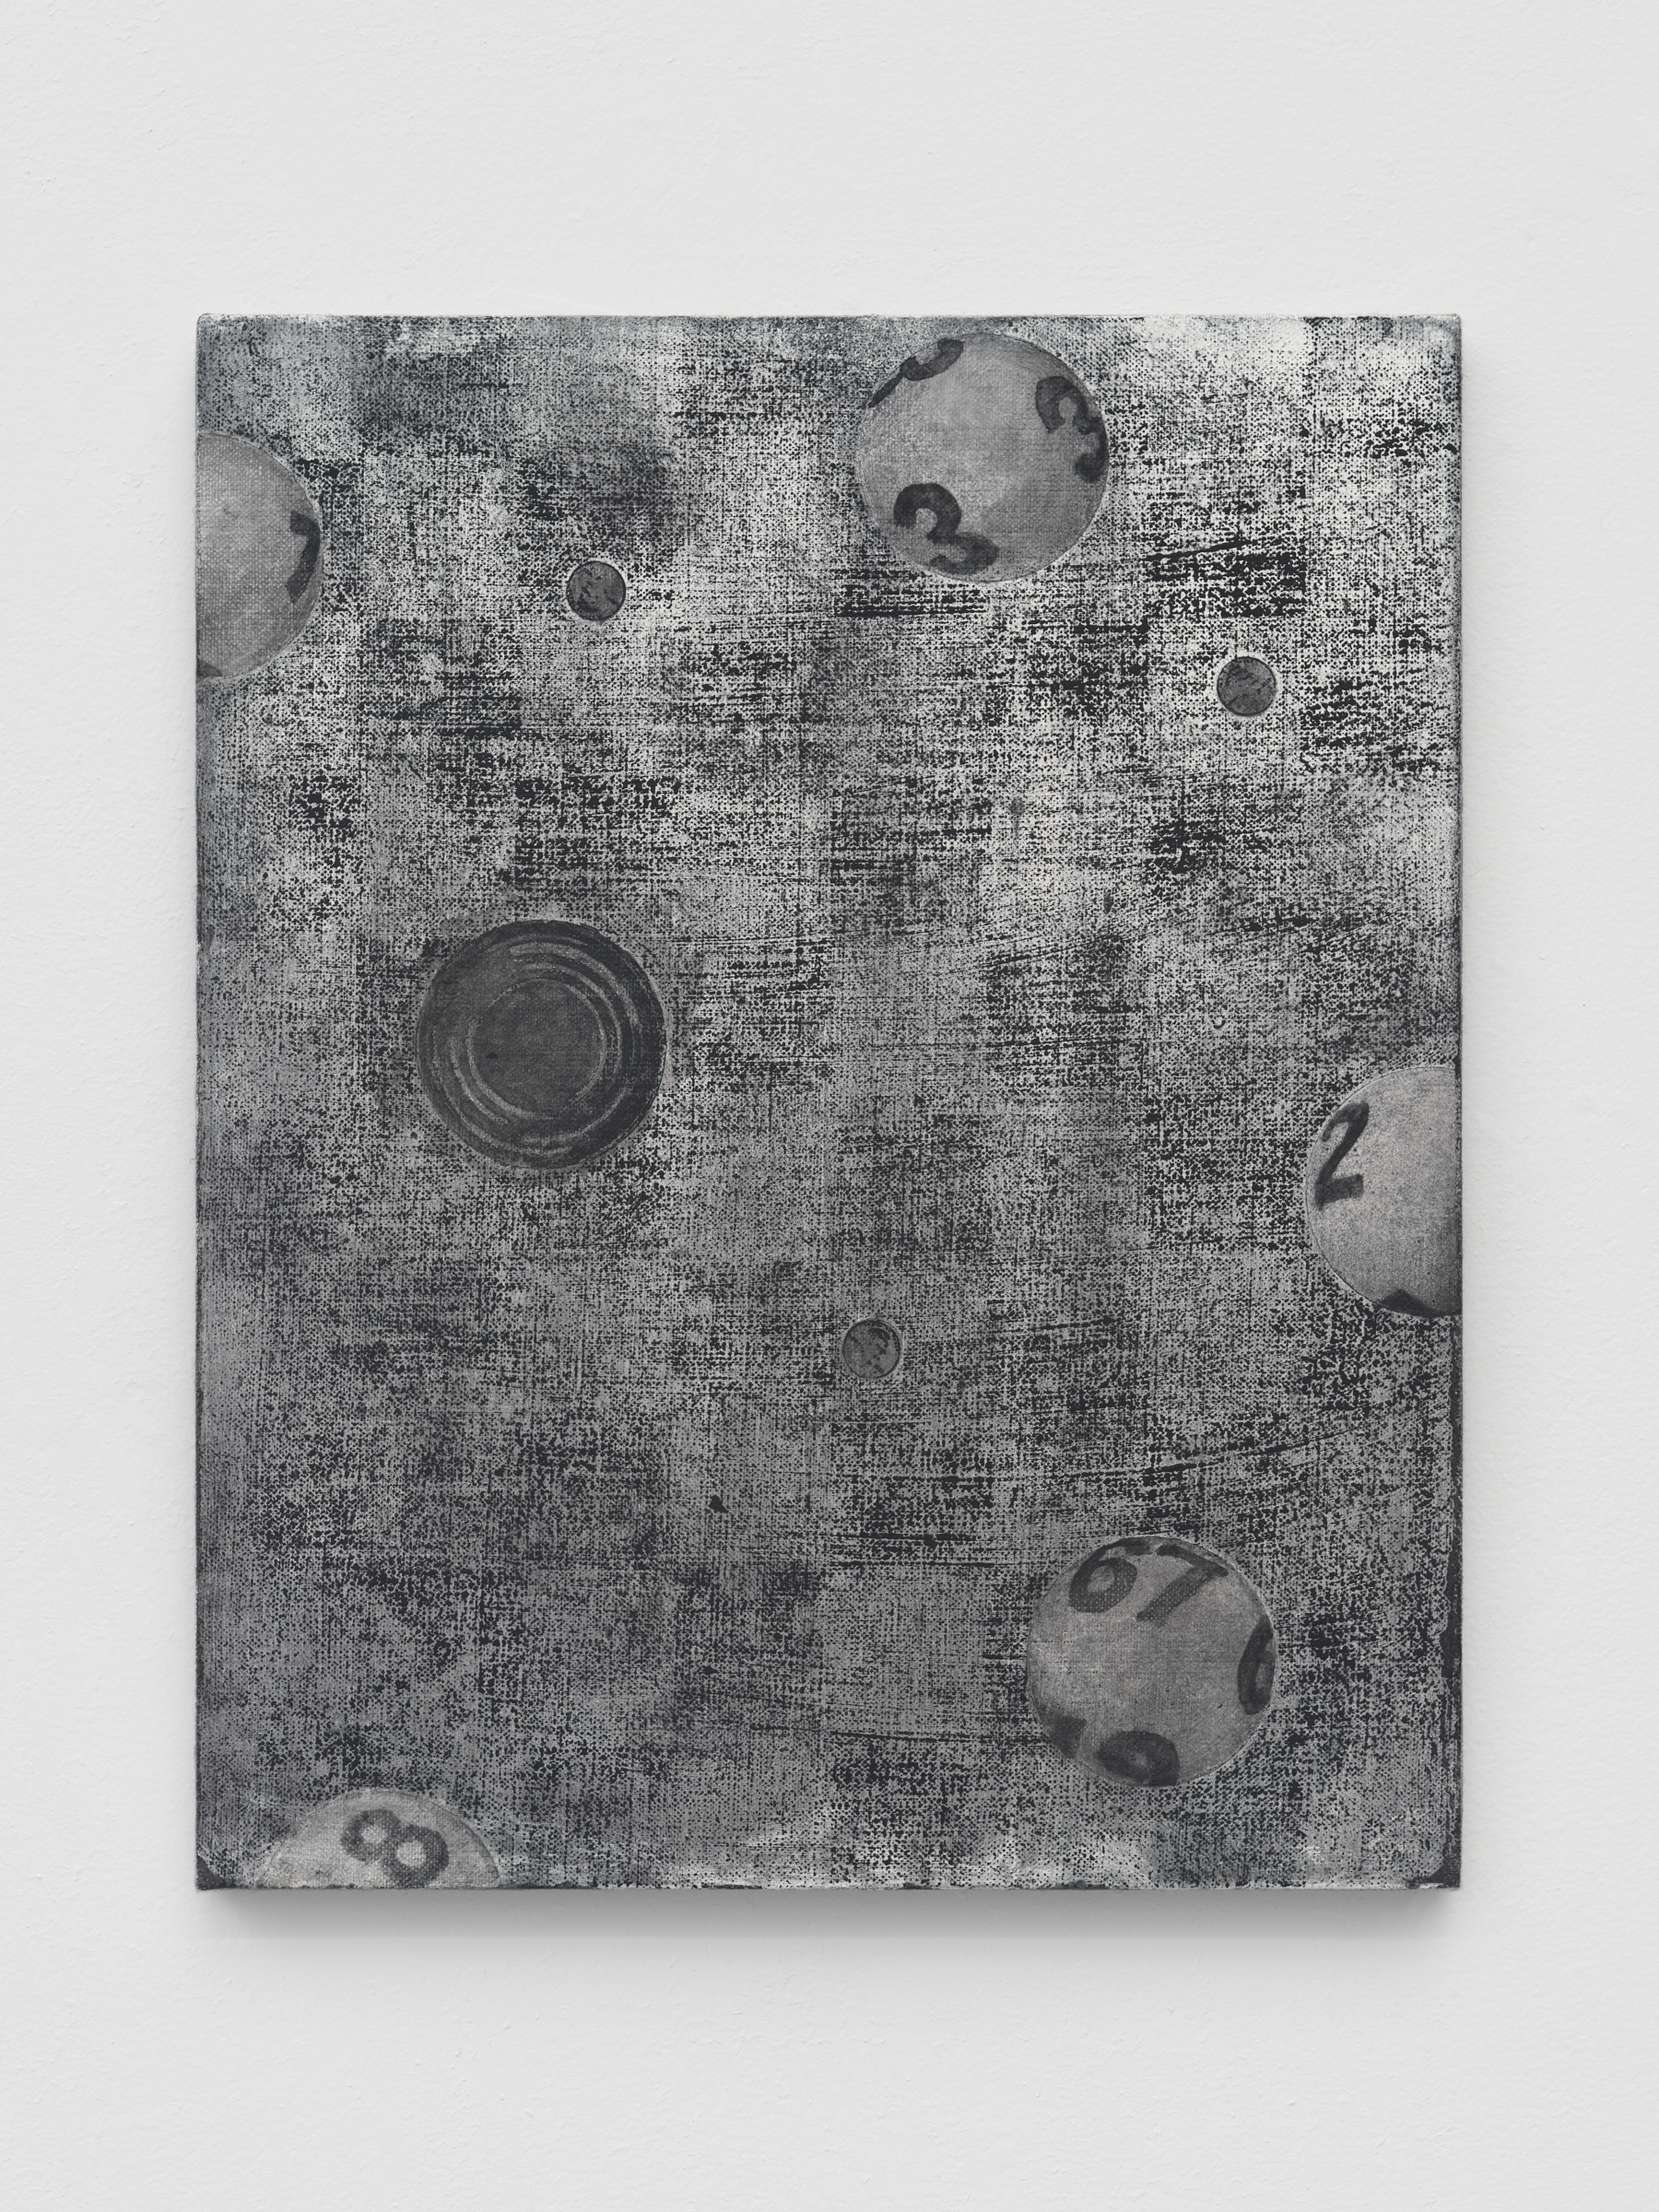 Alex Kwartler, Ground Floor, 2021, Oil on linen, 20 x 16 in.